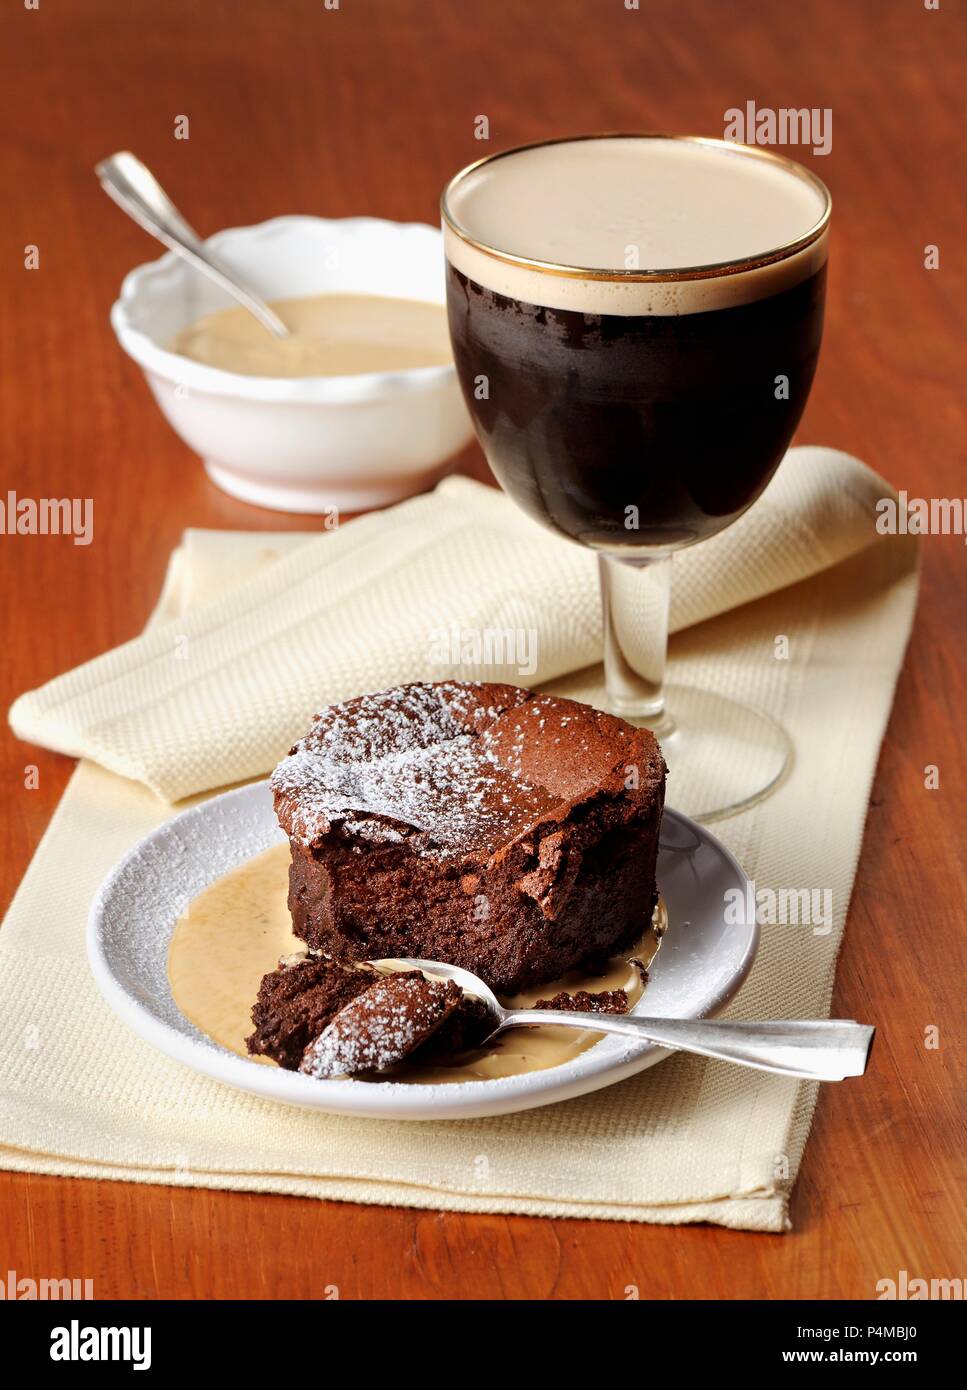 Chocolate cake with vanilla sauce and Irish coffee Stock Photo